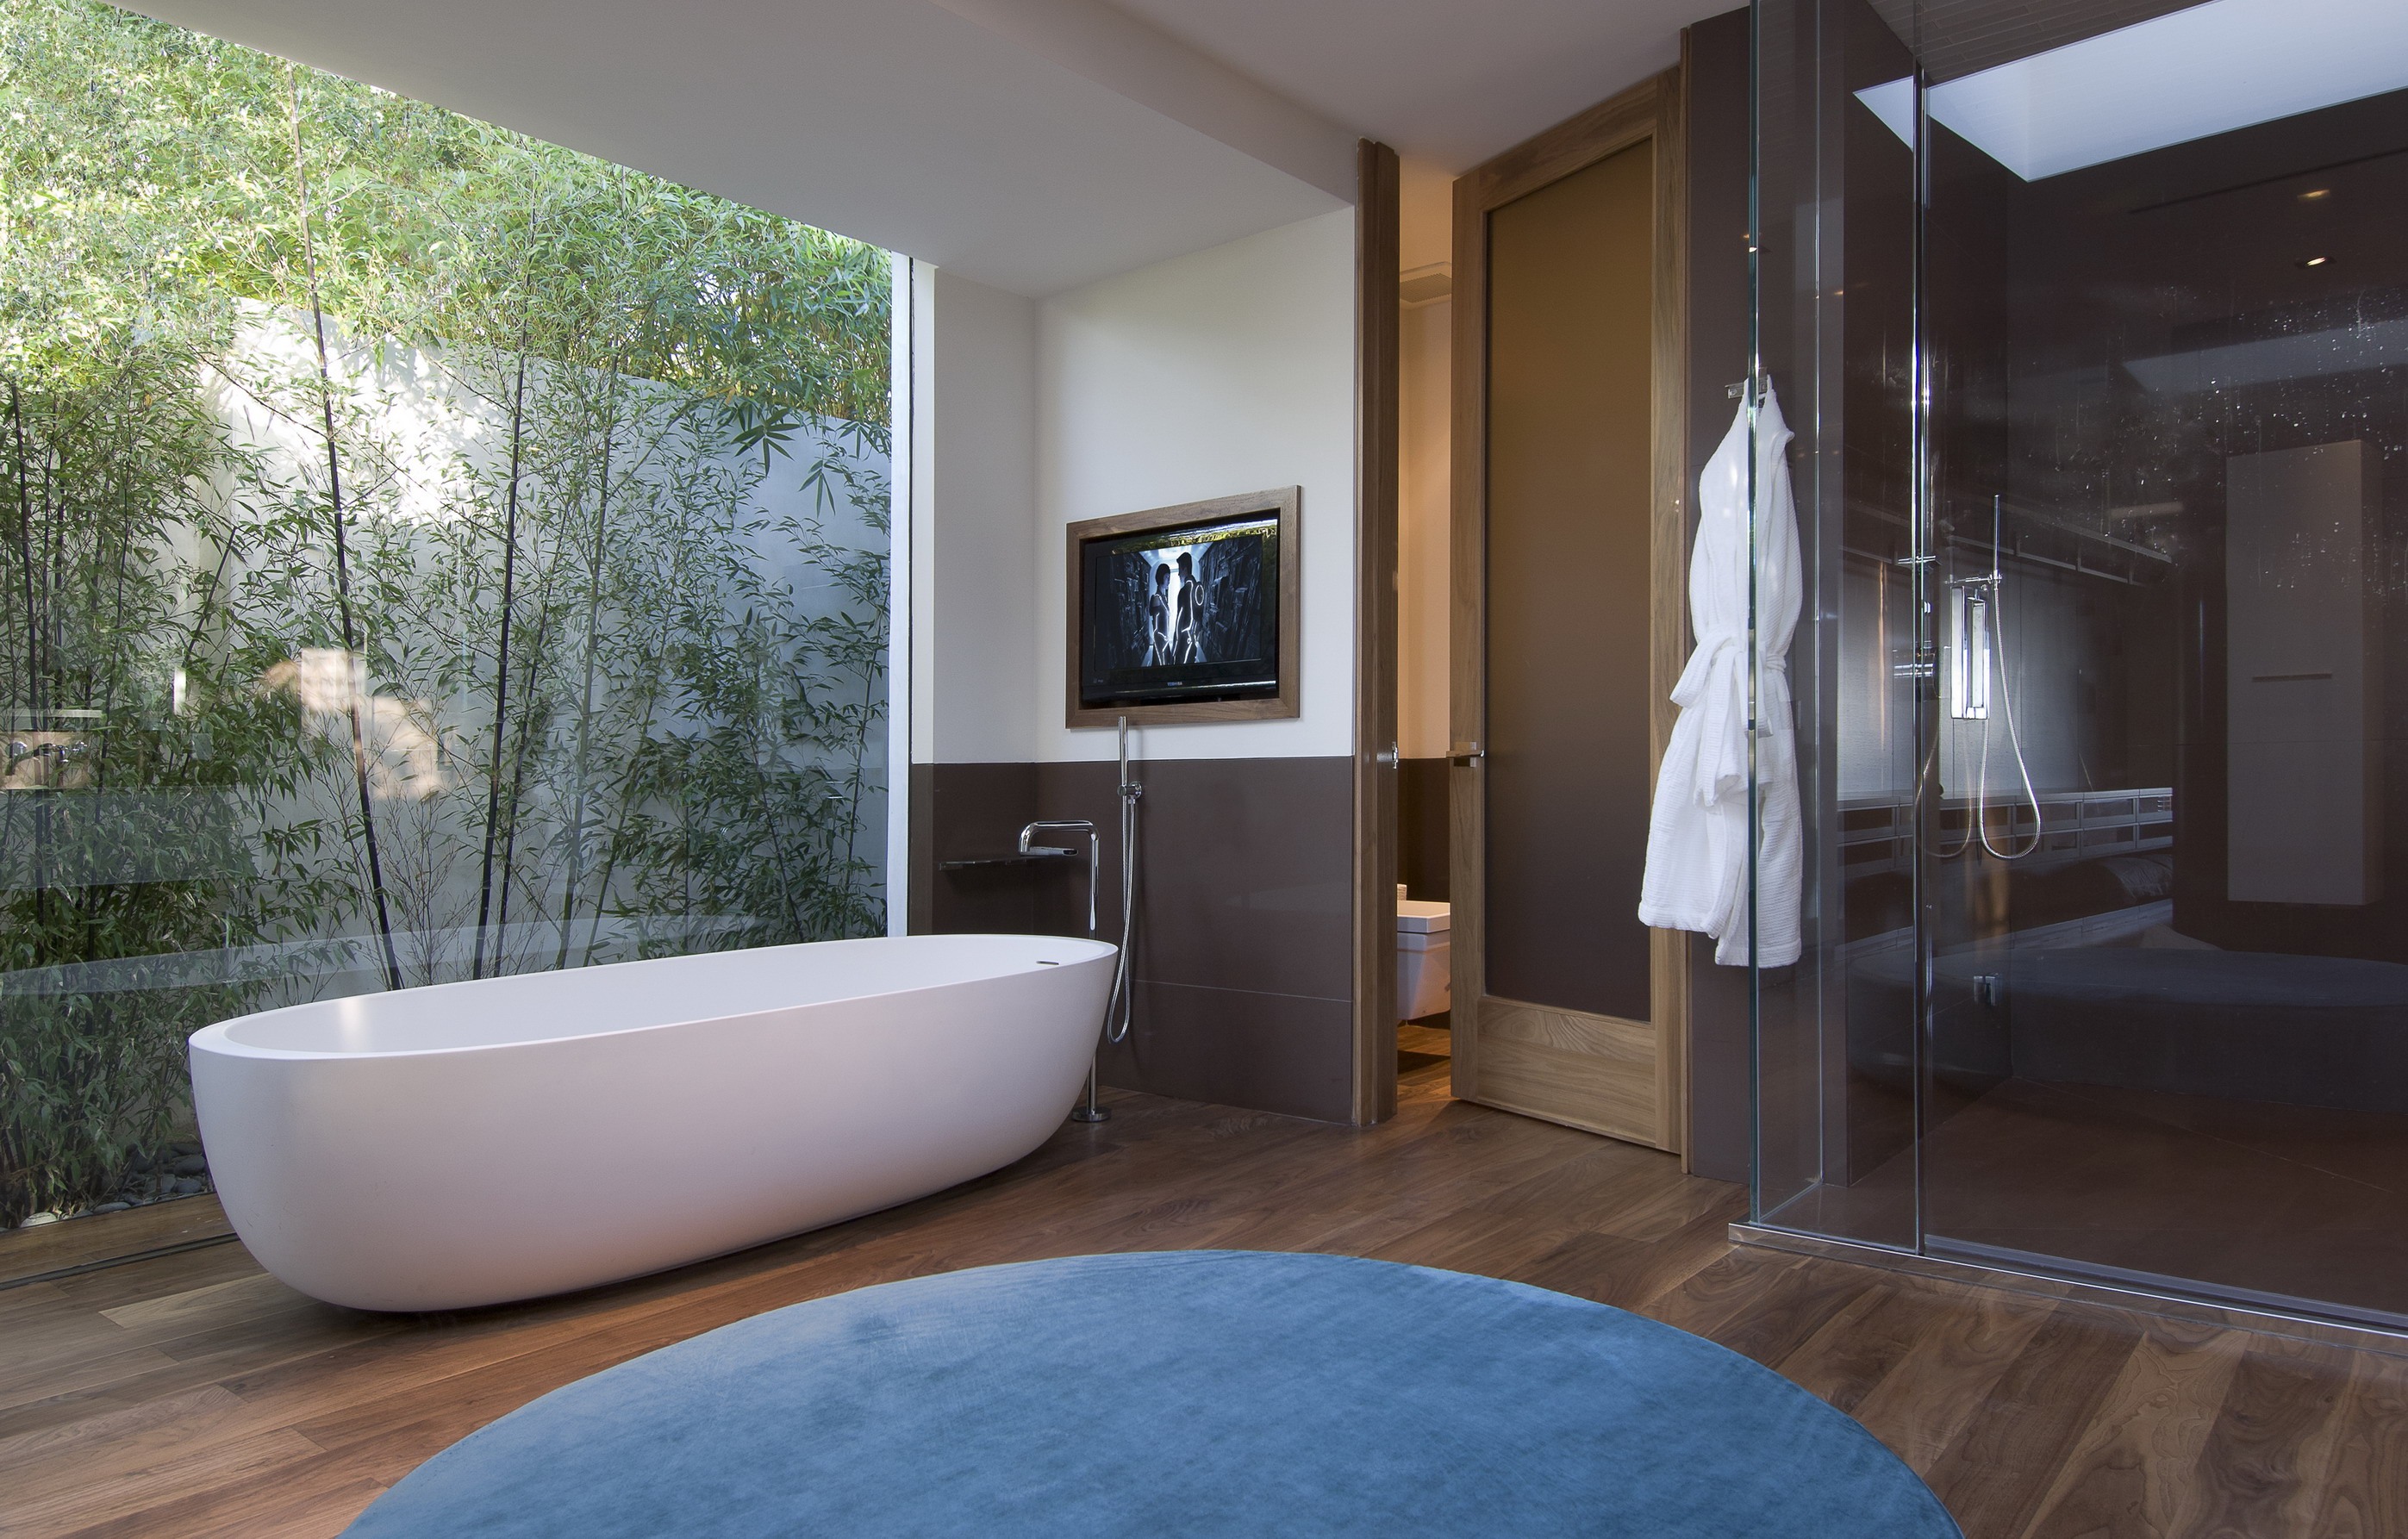 Кровать в ванной комнате. Шикарная ванная комната. Красивая ванна. Отдельностоящая ванна в спальне. Ванная с панорамным окном.